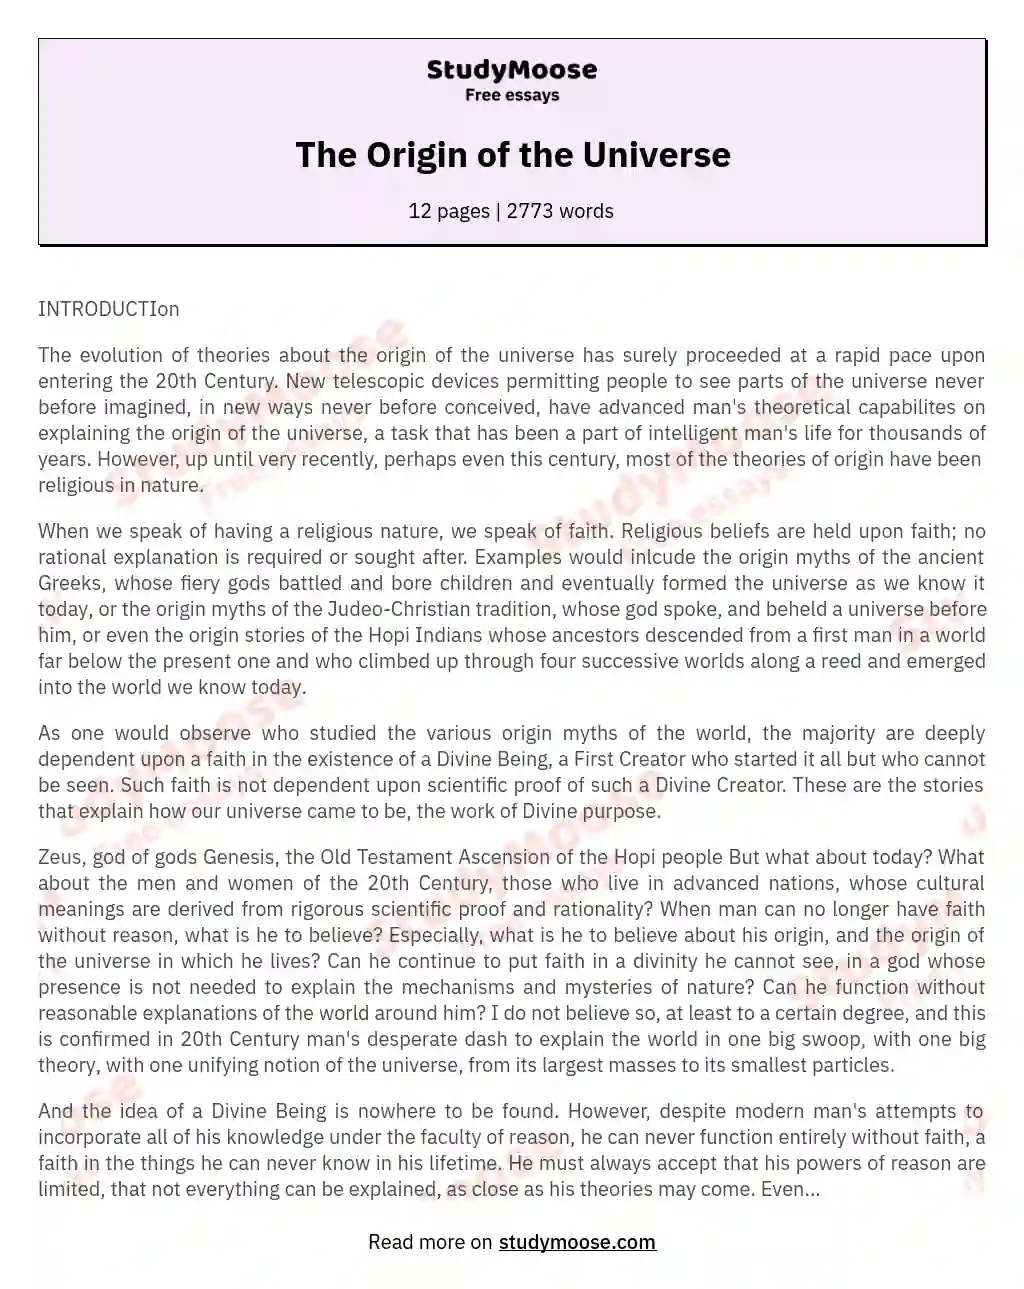 The Origin of the Universe essay